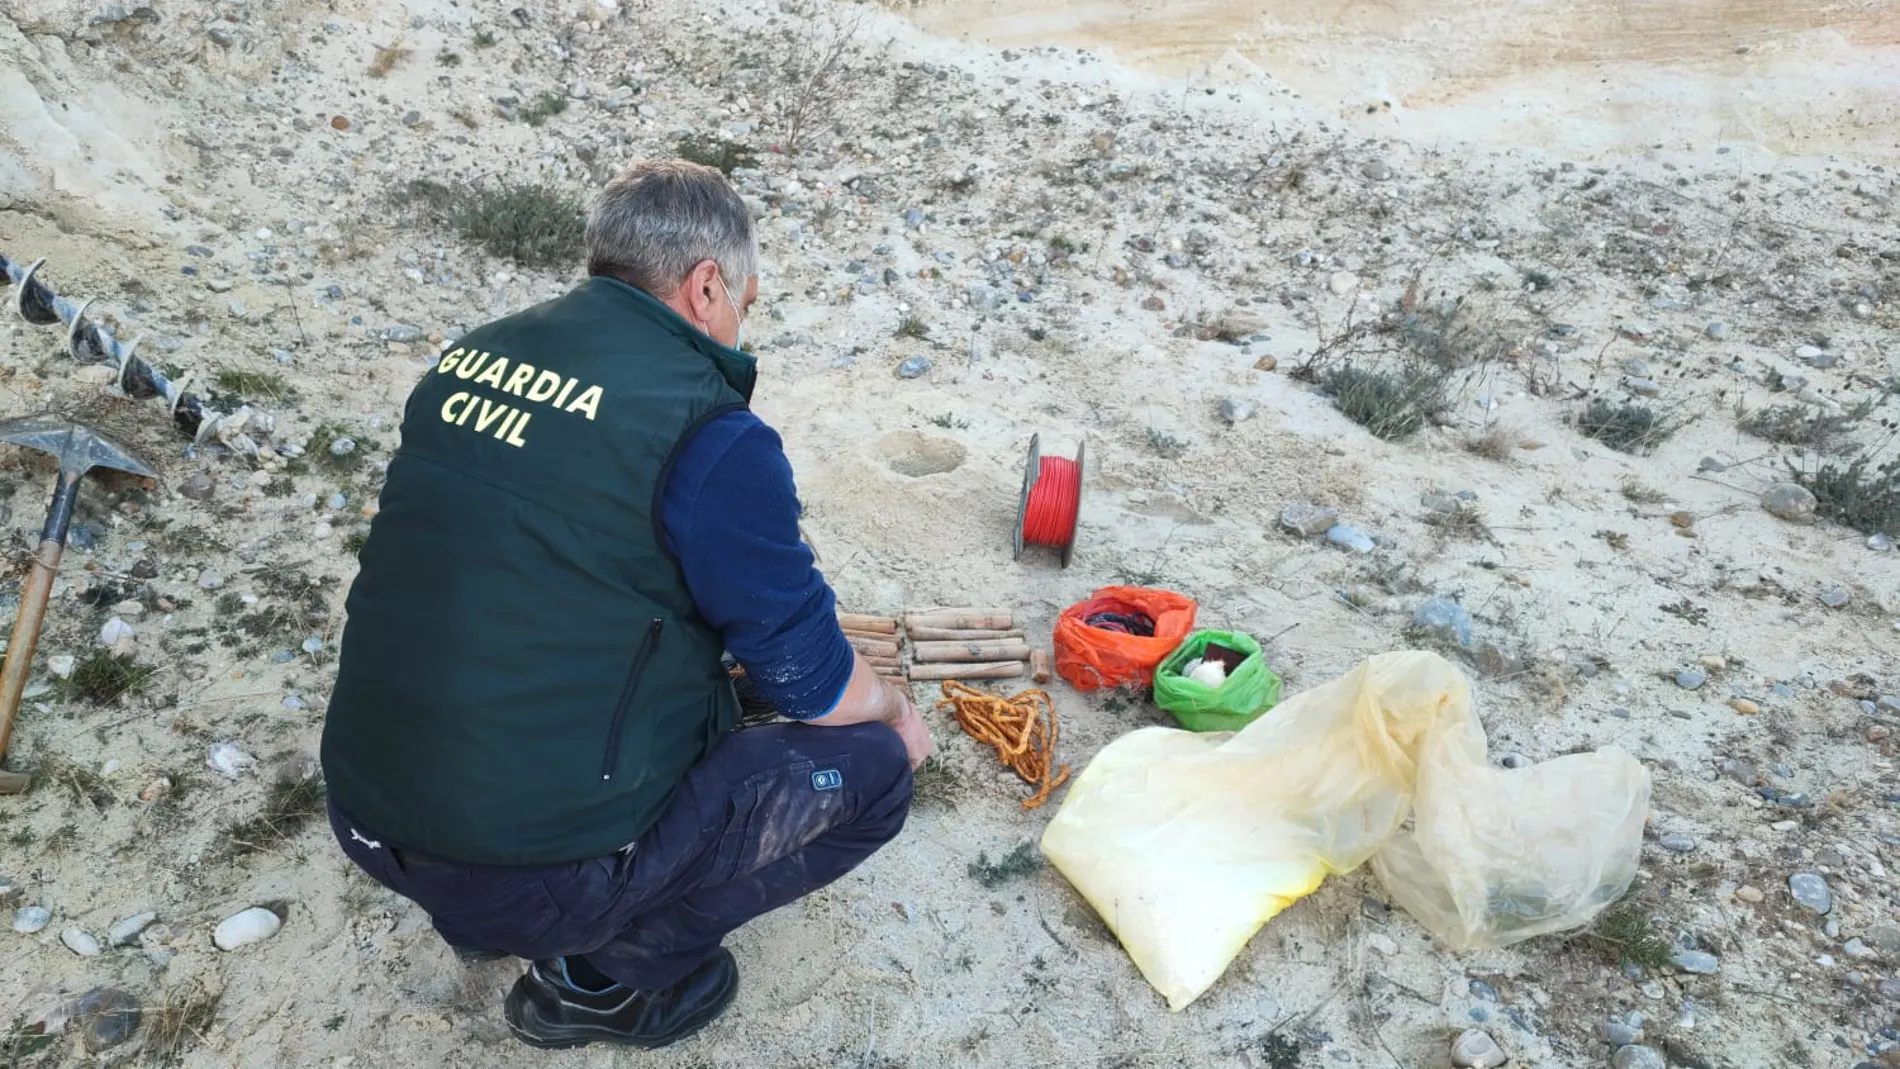 Desactivación de explosivos por efectivos de la Guardia Civil en Soria